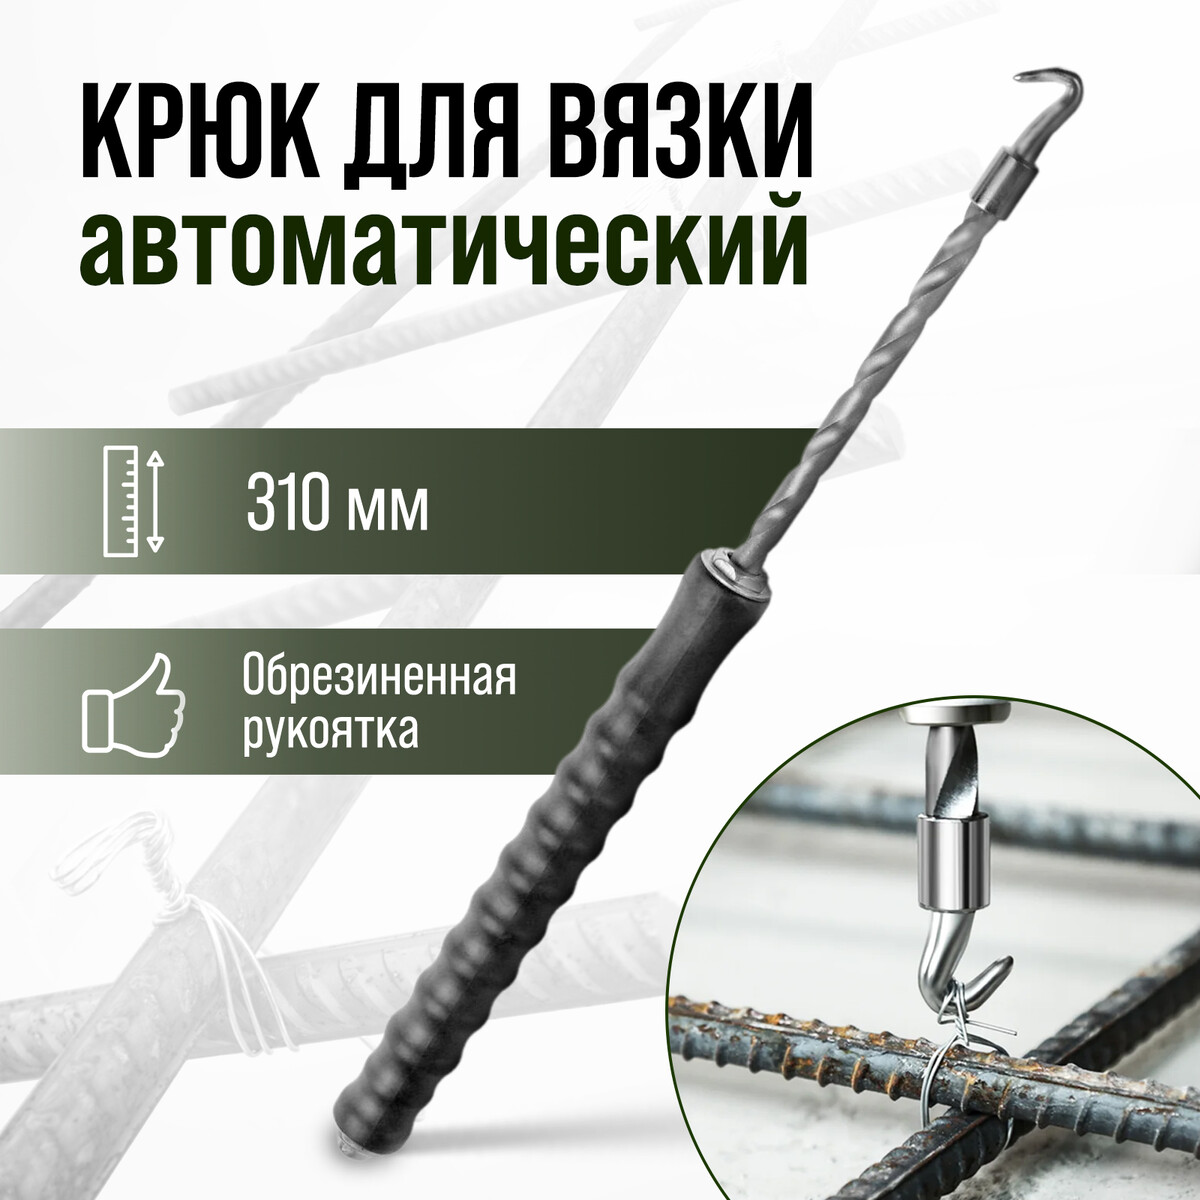 Крюк для вязки арматуры тундра, автоматический, обрезиненная рукоятка, 310 мм штамп автоматический с приколами 14 х 38 мм